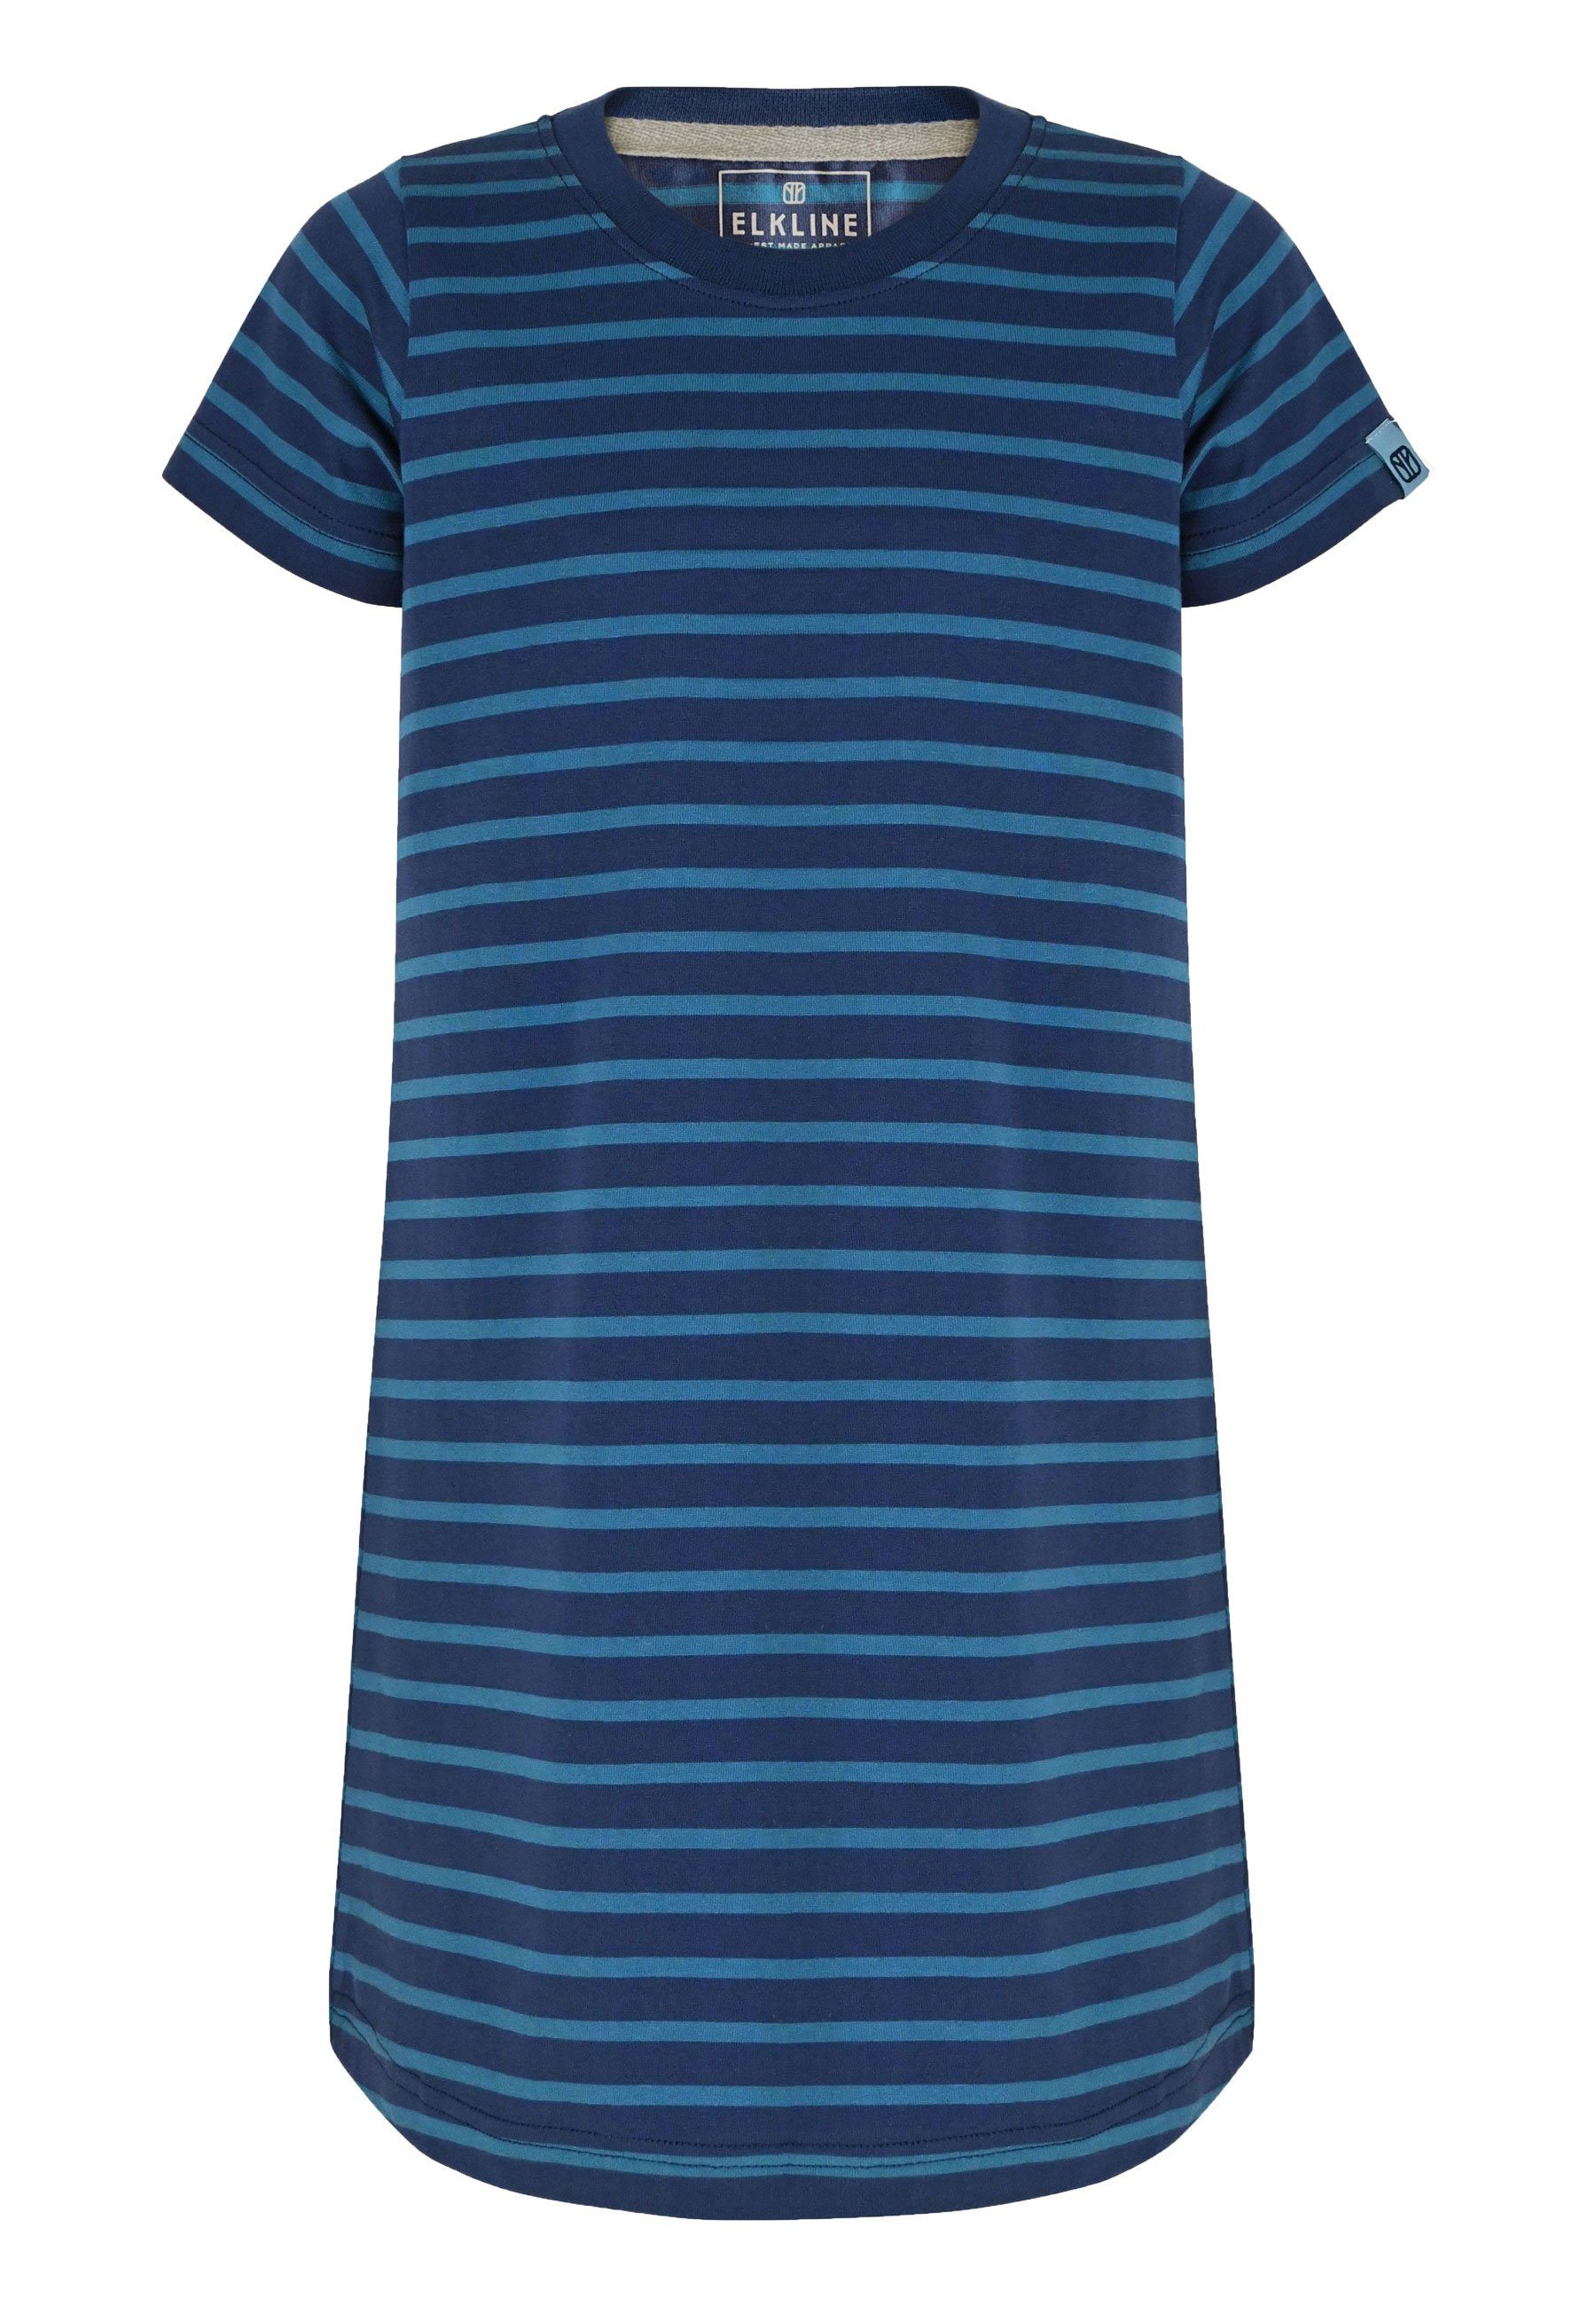 Elkline darkblue Basic Sommerkleid Shirt-Kleid Streifen Hanna - bluecoral